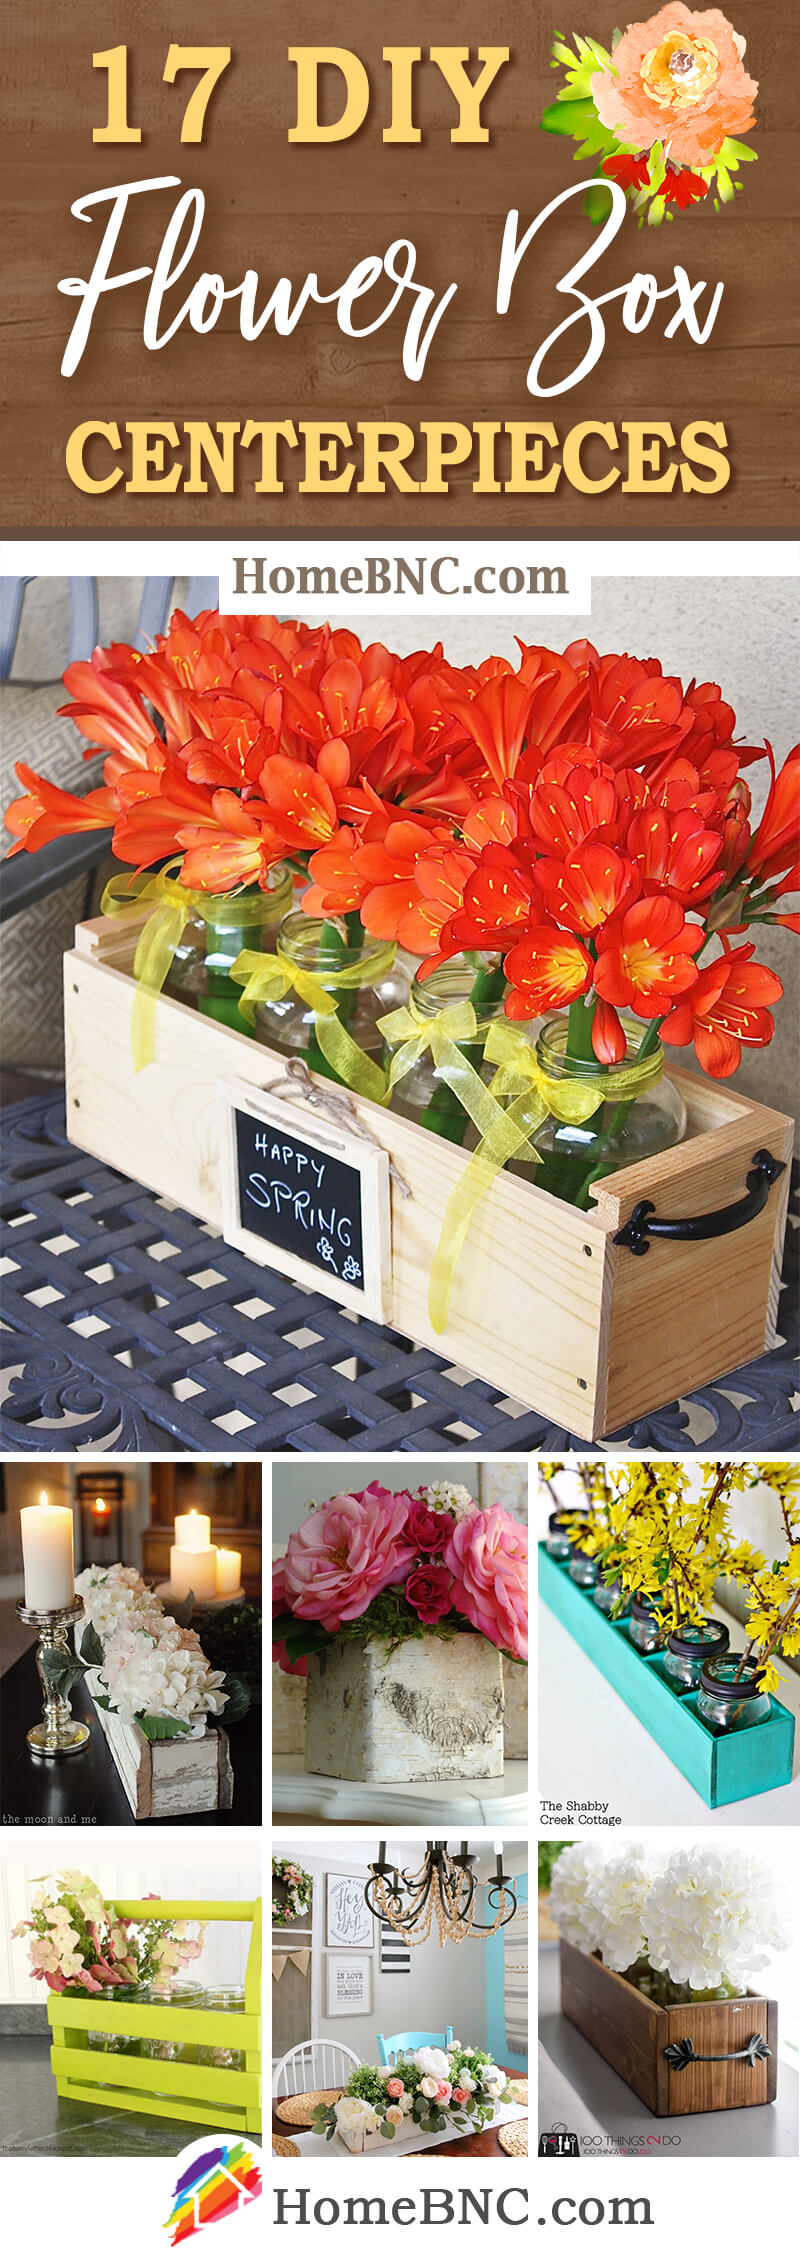 DIY Flowerbox Centerpiece Ideas